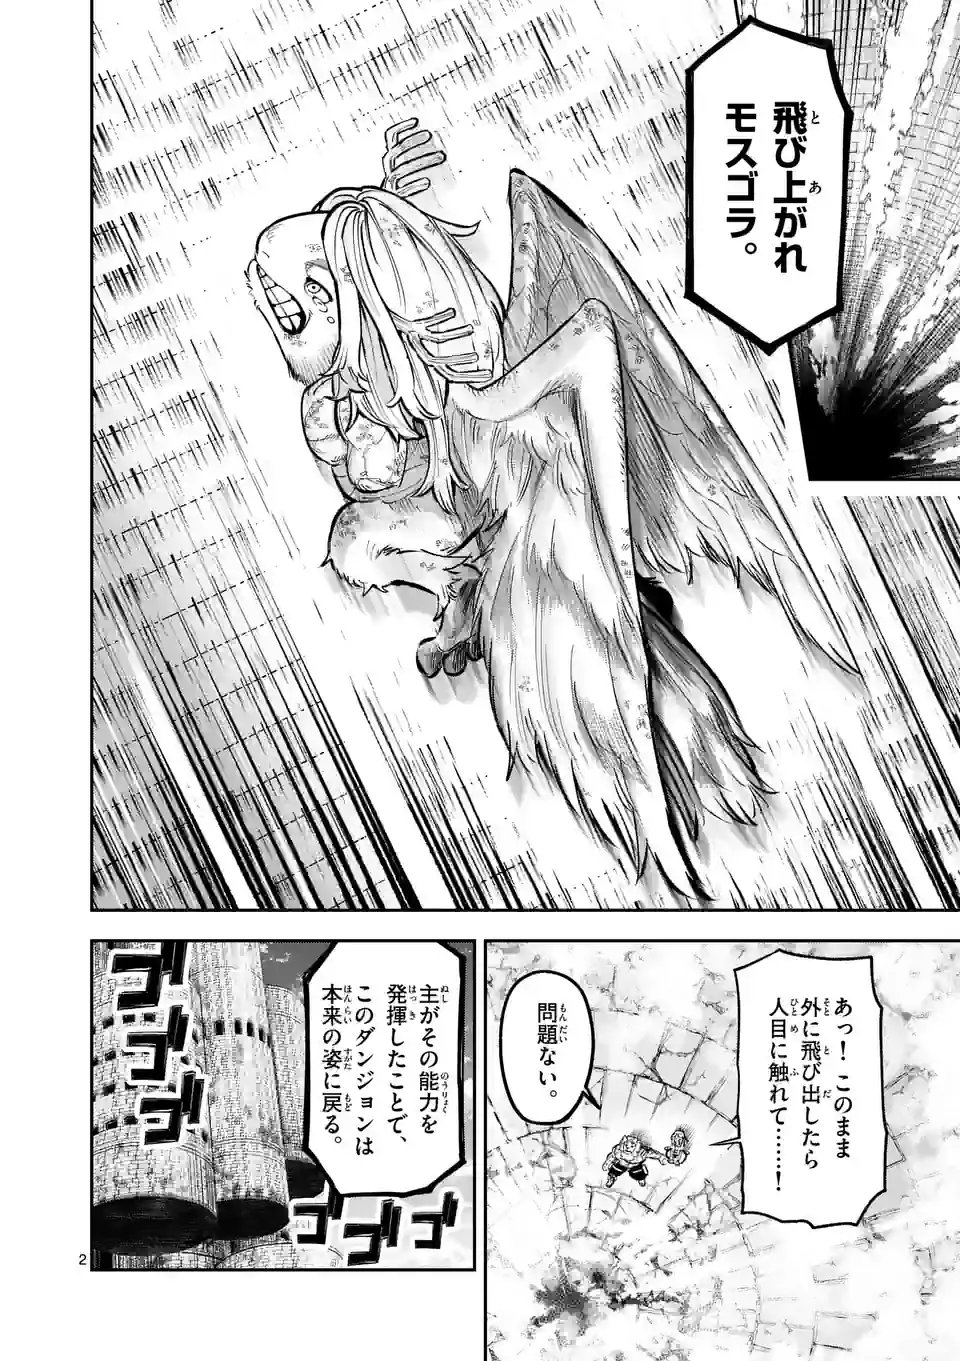 Juuou to Yakusou - Chapter 15 - Page 2